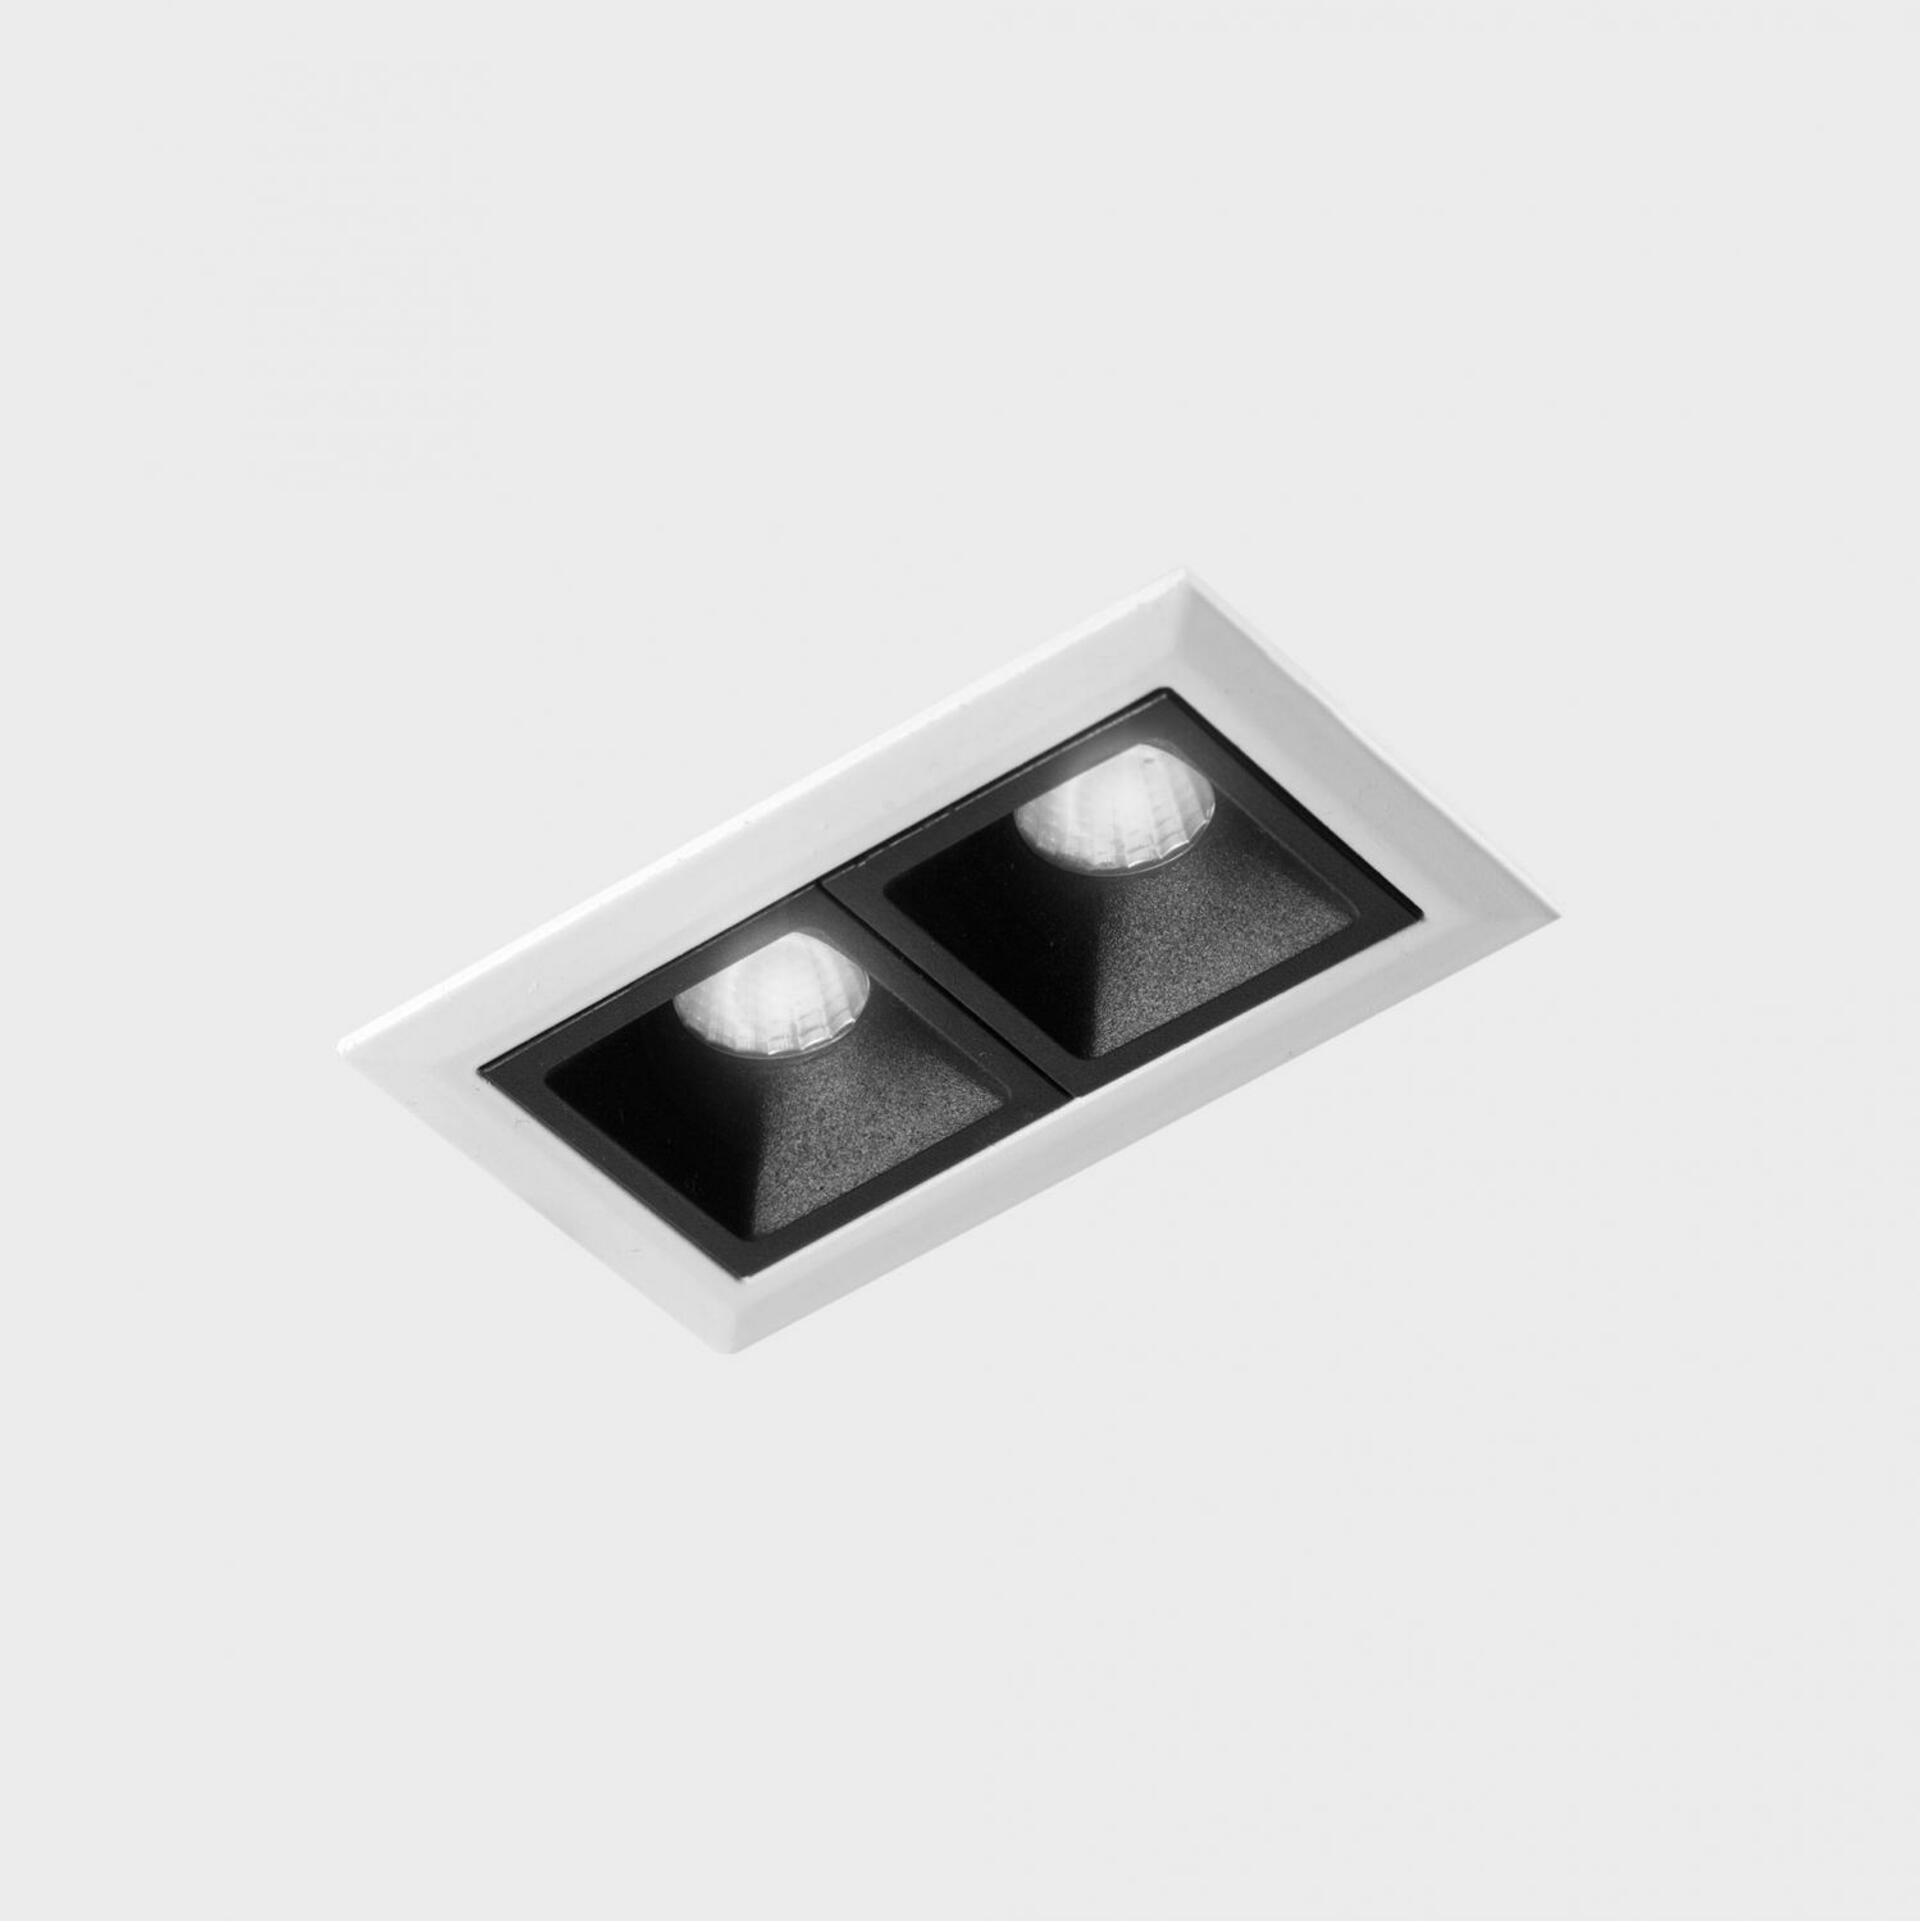 KOHL LIGHTING KOHL-Lighting NSES zapuštěné svítidlo s rámečkem 75x45 mm bílá-černá 4 W CRI 90 2700K PUSH